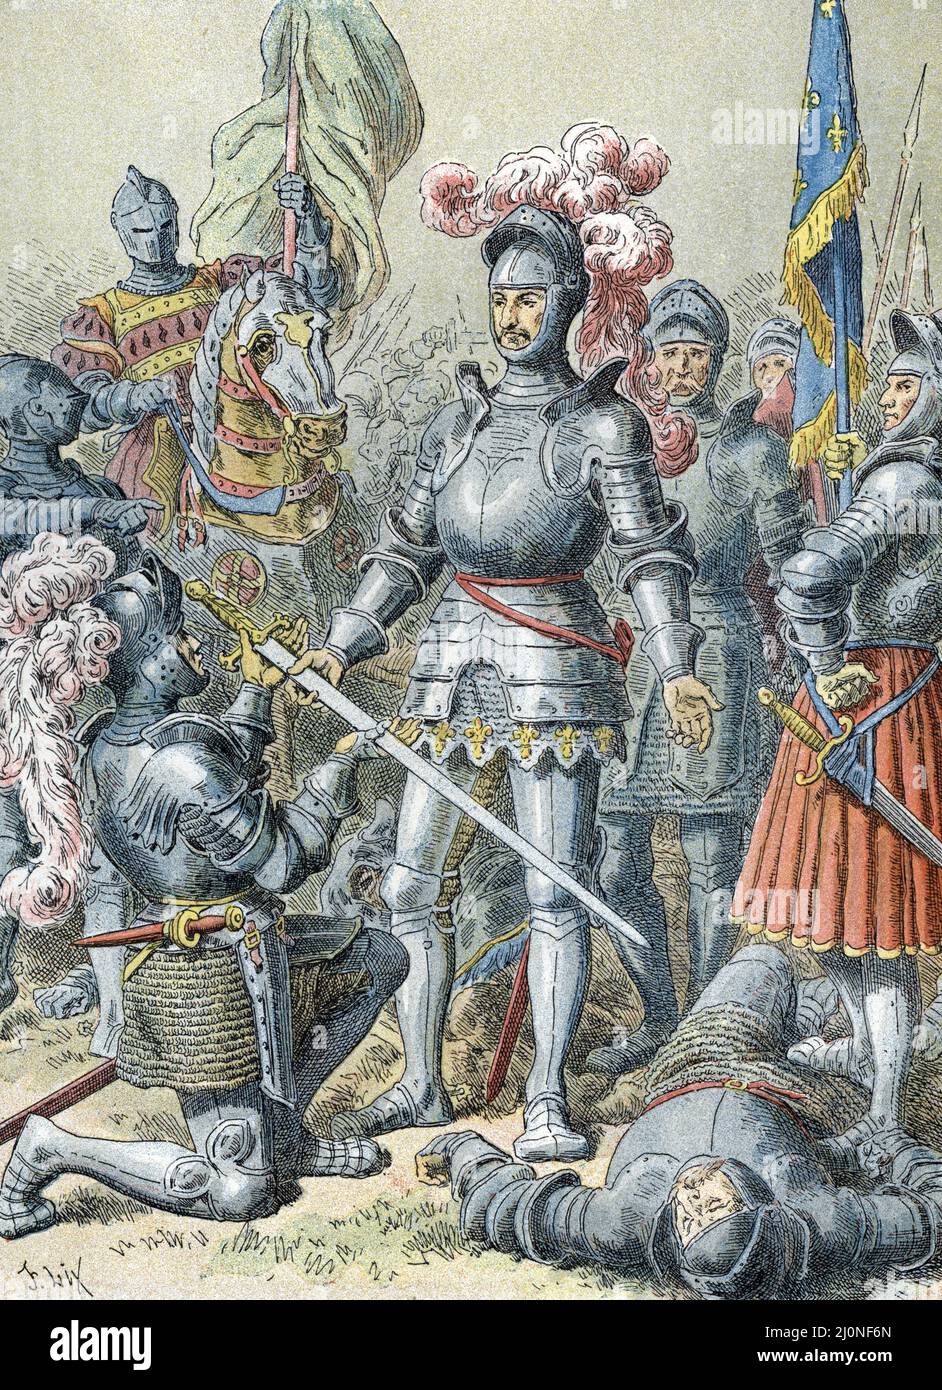 Guerre d'Italie (1521-1526): la bataille de Pavie (24 fevrier 1525), opposant les troupe francaises de Francois Ier (1494-1547) et celles de Charles Quin (1500-1558), lors de laquelle, le roi de France est fait nier apres sa defaite, Francois er de Lanème, la battaglia di Charles de Paéme () 24th febbraio 1525 tra l'esercito francese sotto il re Francesco i e le truppe tedesco-spagnole dell'imperatore Carlo V, Chi era il vincitore - Francesco i di Francia è stato preso prigioniero dopo la sua sconfitta e dà la sua spada a Charles de Lannoy) gravure tiree de 'la France a travers les siecles' de Foto Stock